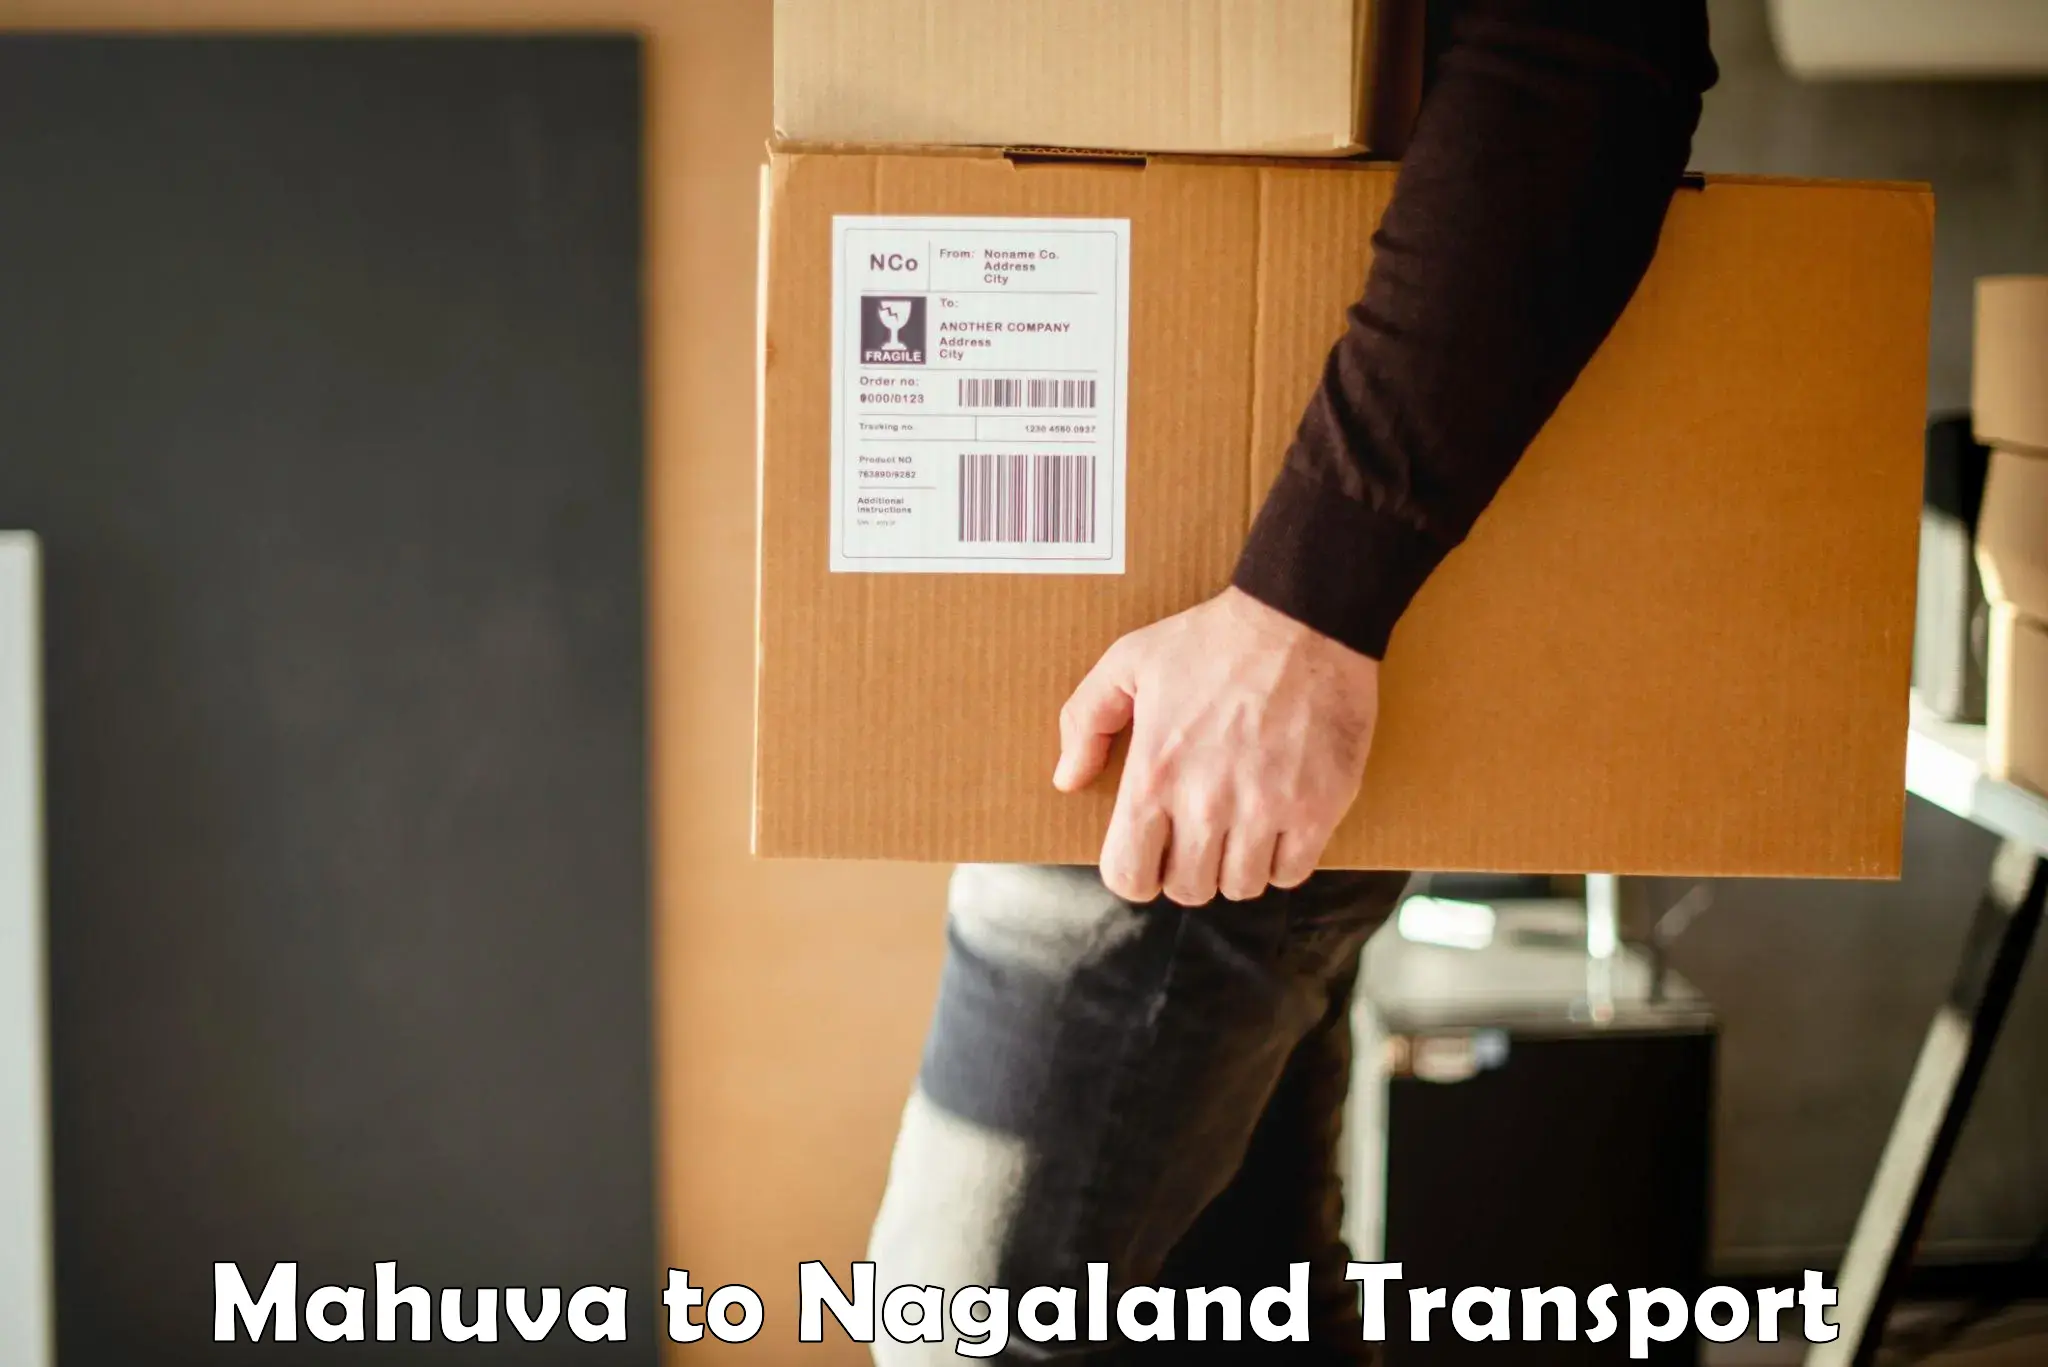 Daily transport service Mahuva to NIT Nagaland